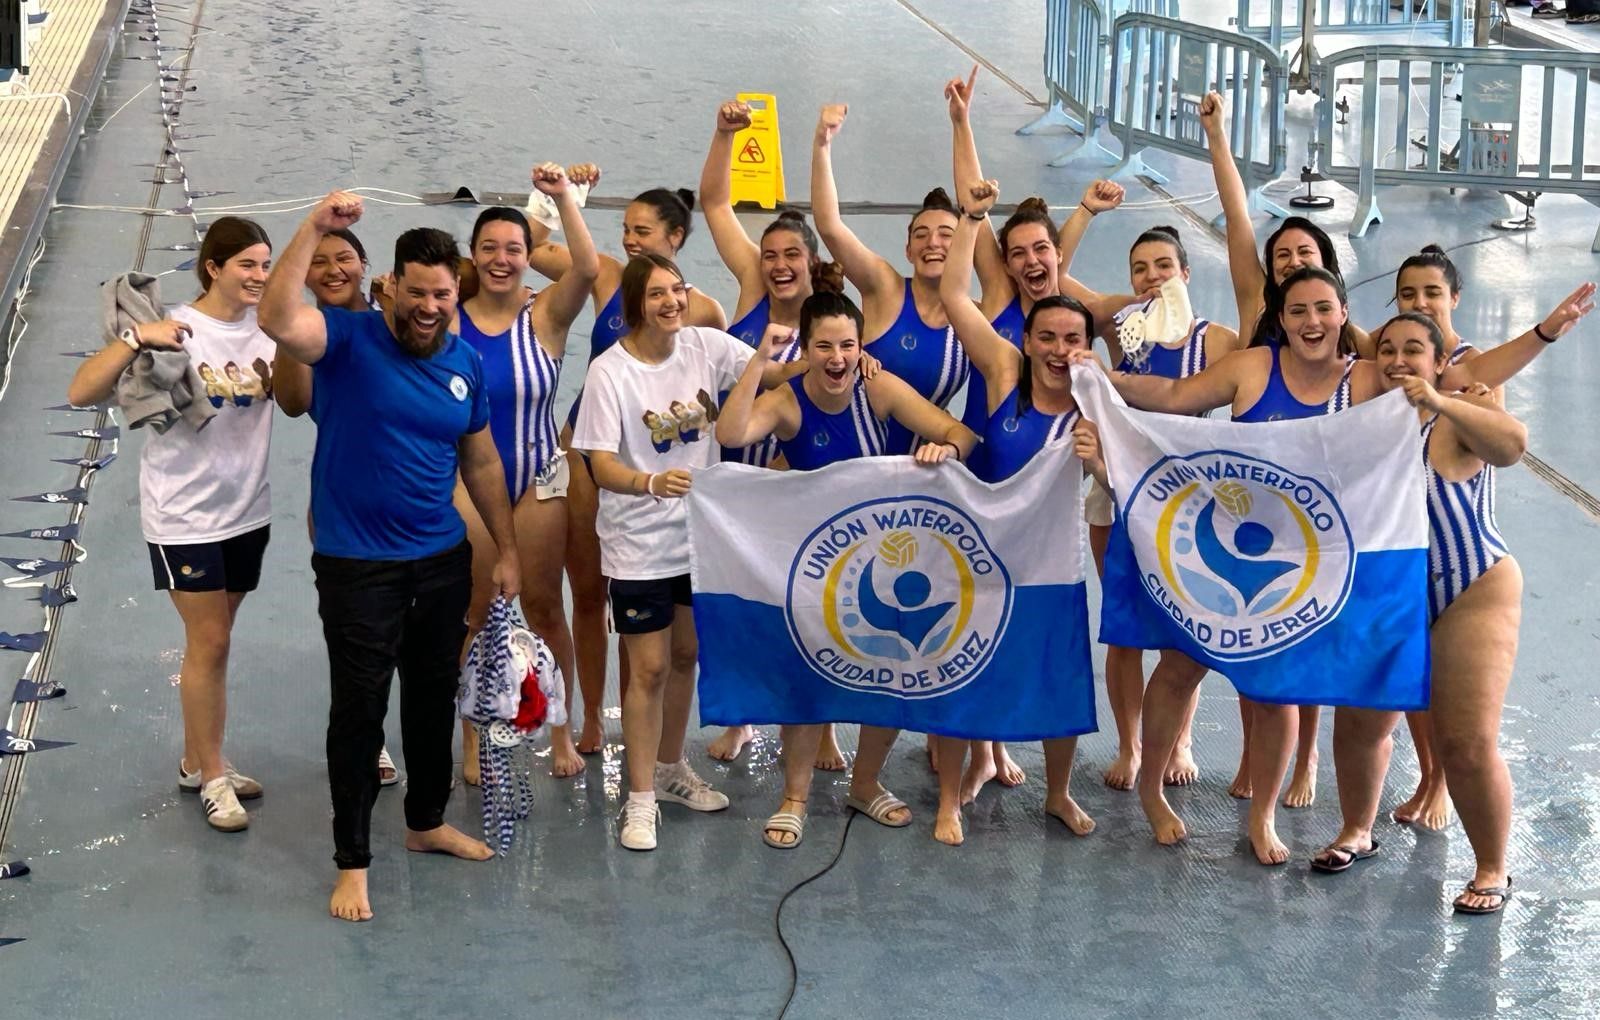 El equipo femenino del Unión Waterpolo Ciudad de Jerez, primero de la provincia de Cádiz en lograr el bronce en el campeonato de Andalucía.